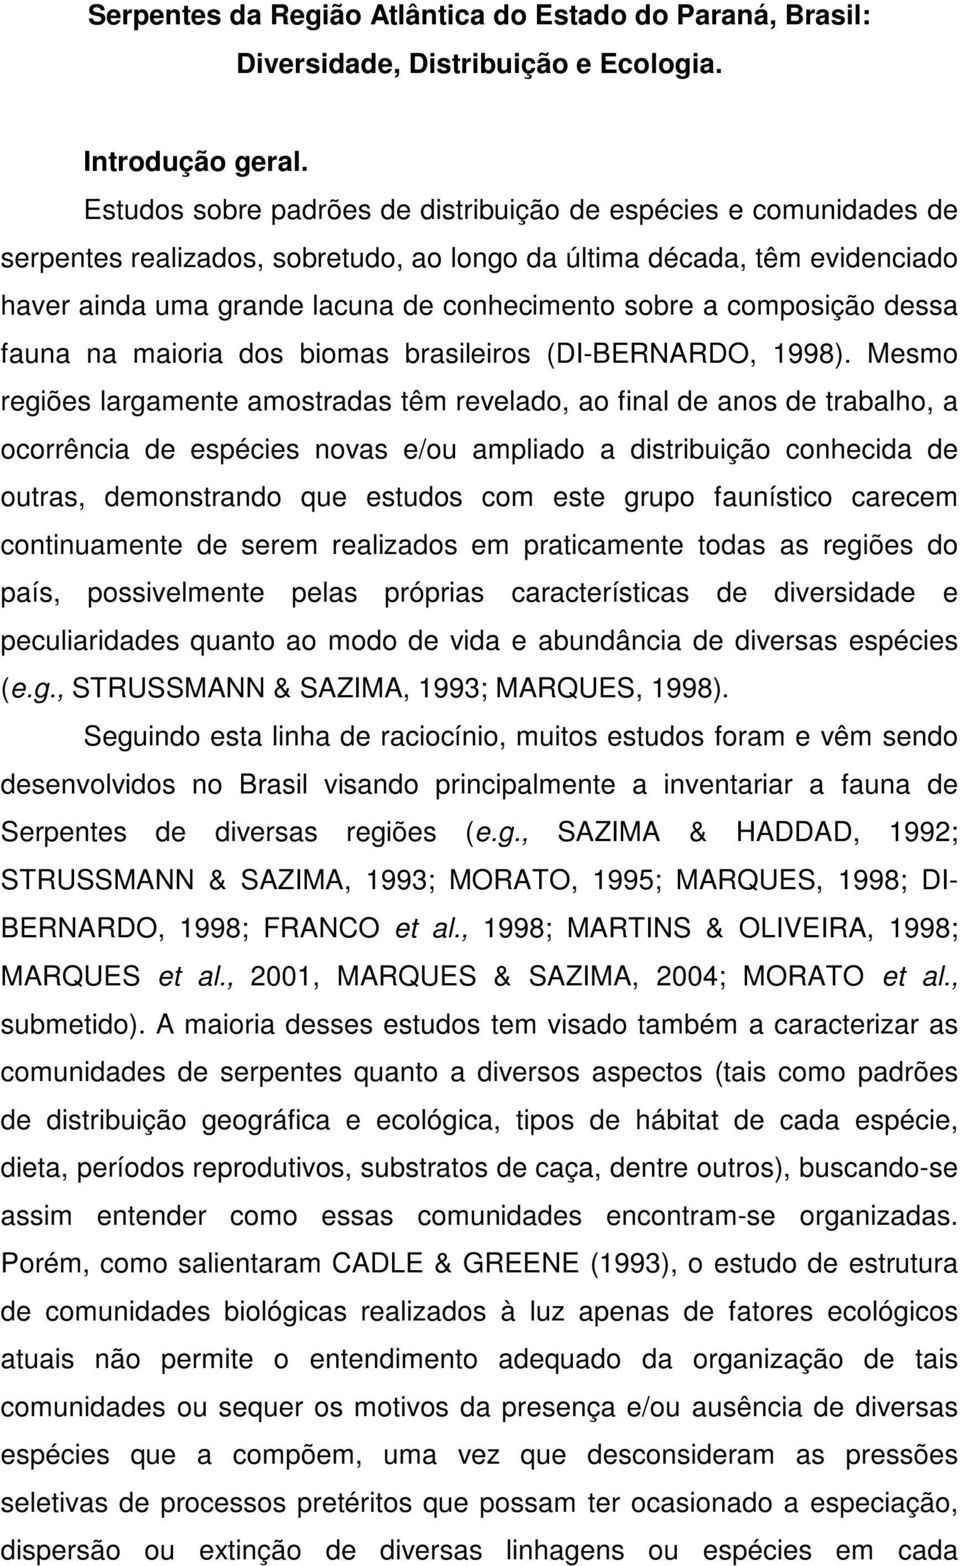 composição dessa fauna na maioria dos biomas brasileiros (DI-BERNARDO, 1998).